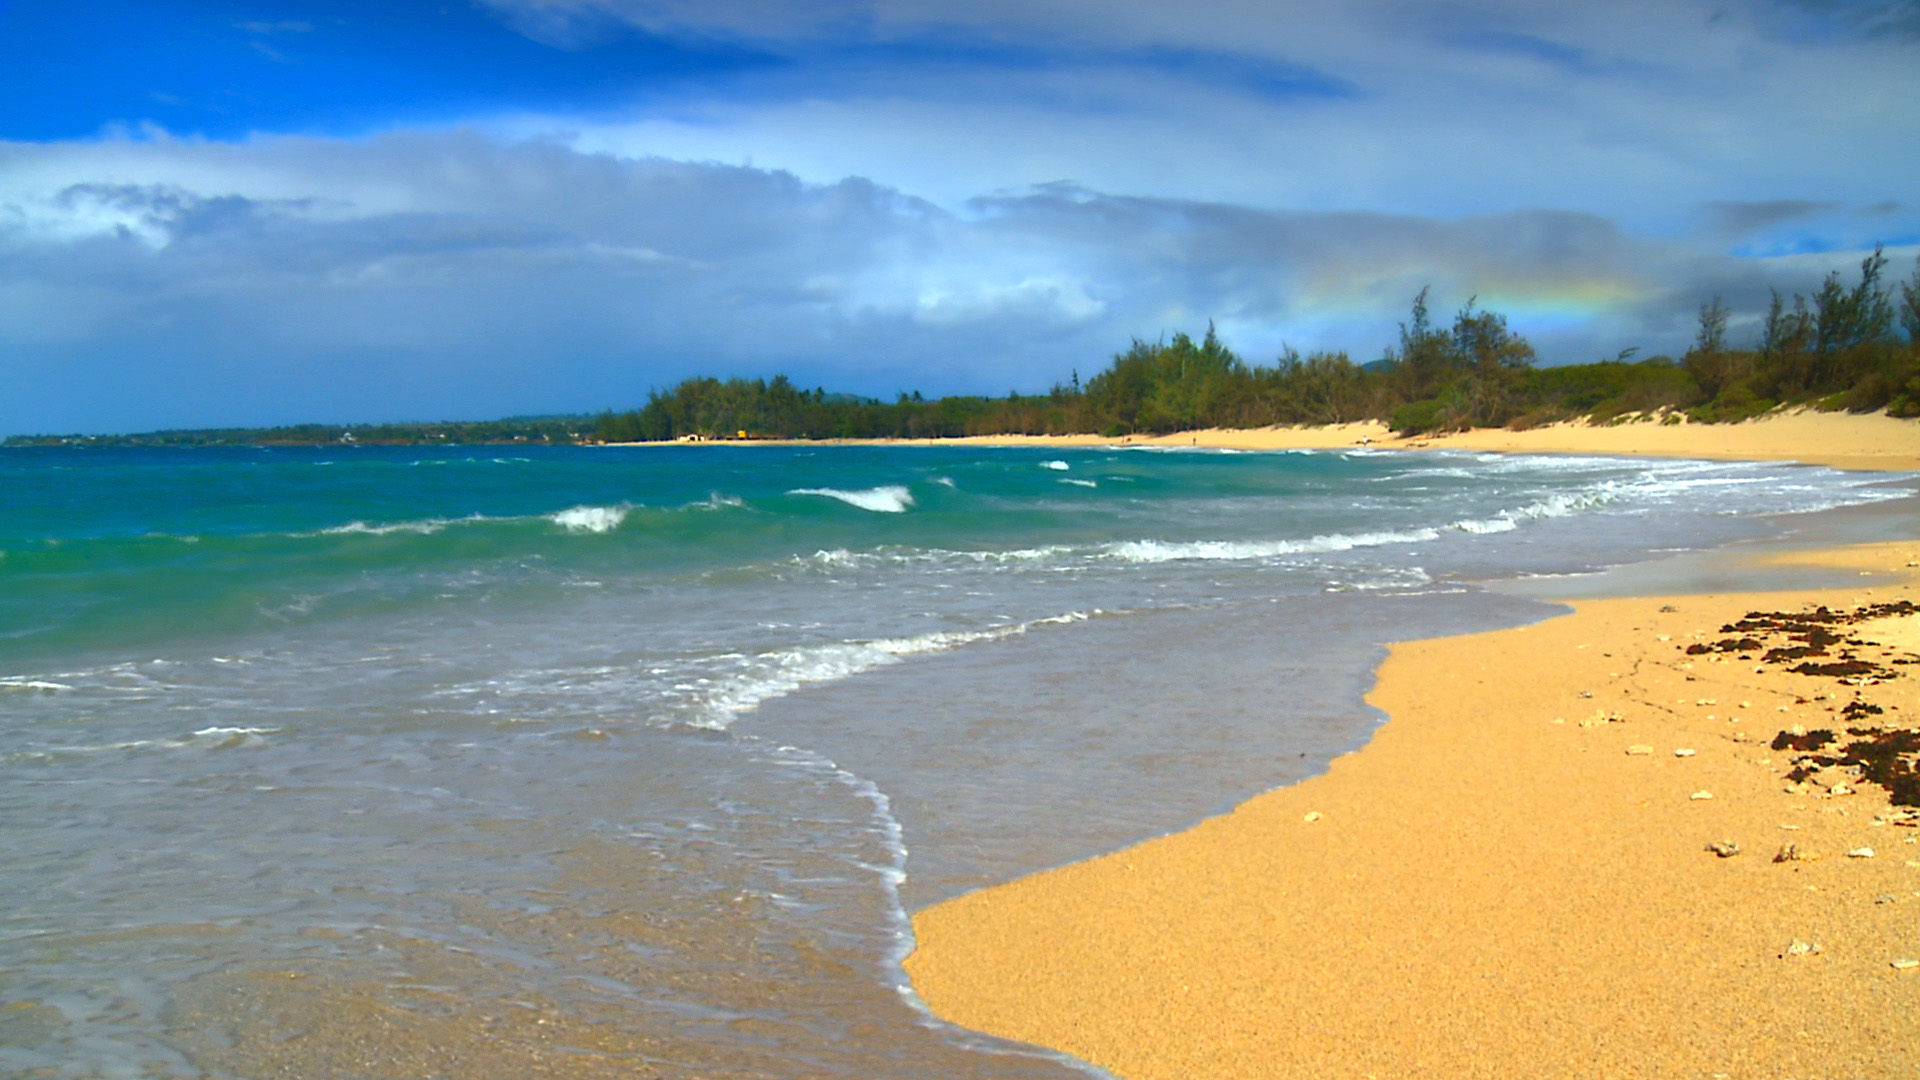 HD Desktop Hawaii Beach Scenes X Kb Jpeg